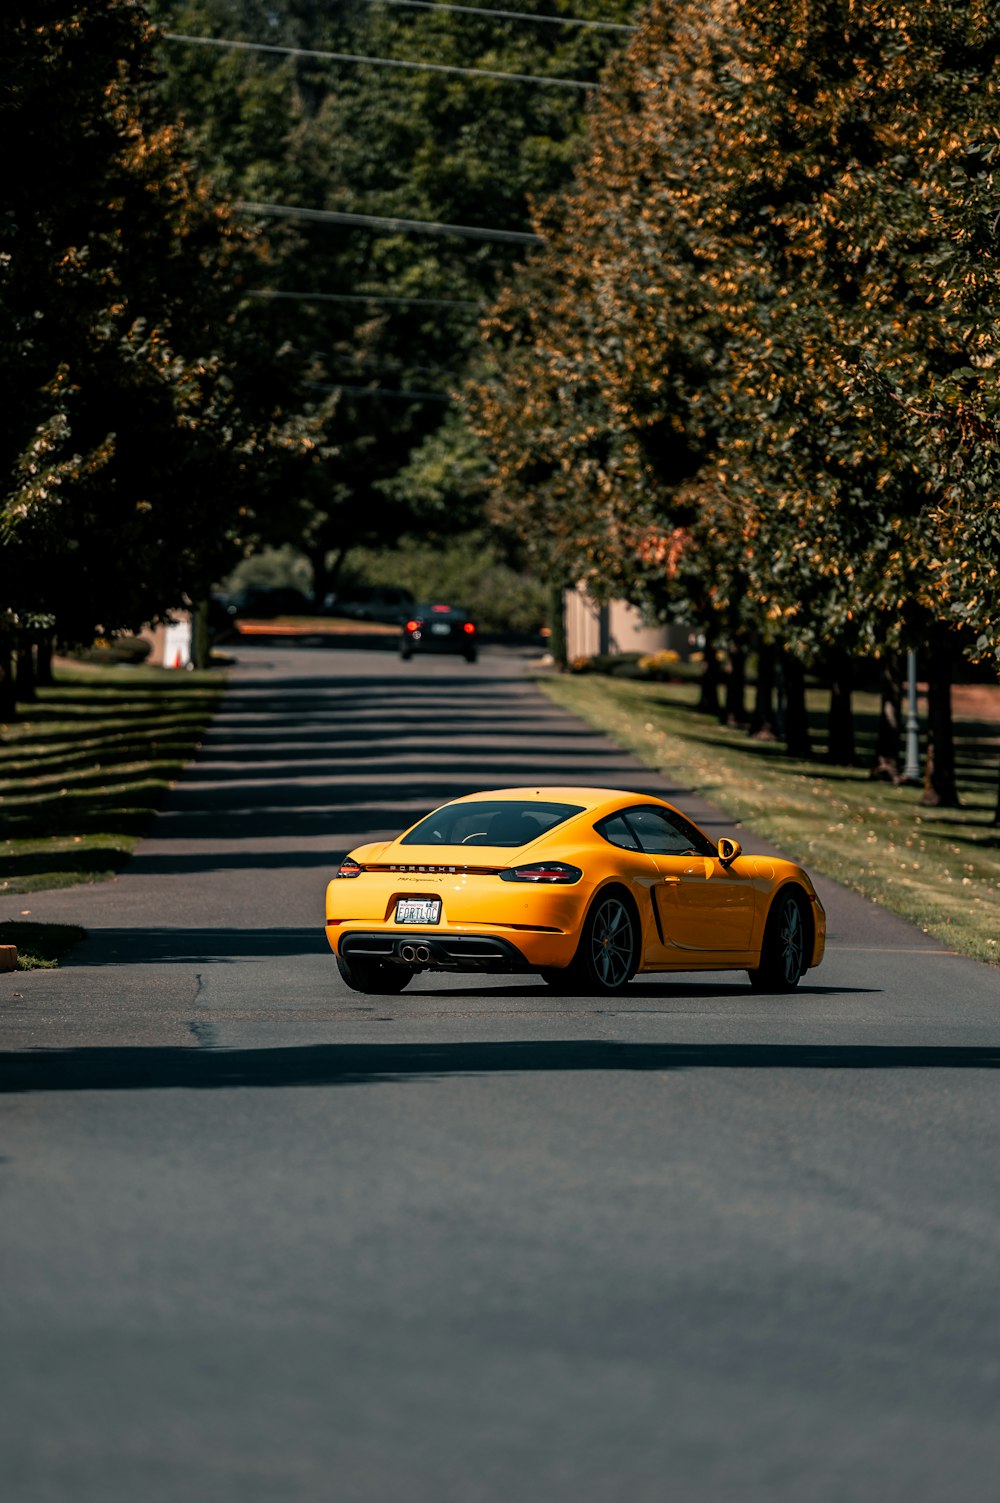 Porsche amarelo 911 estacionado na calçada durante o dia